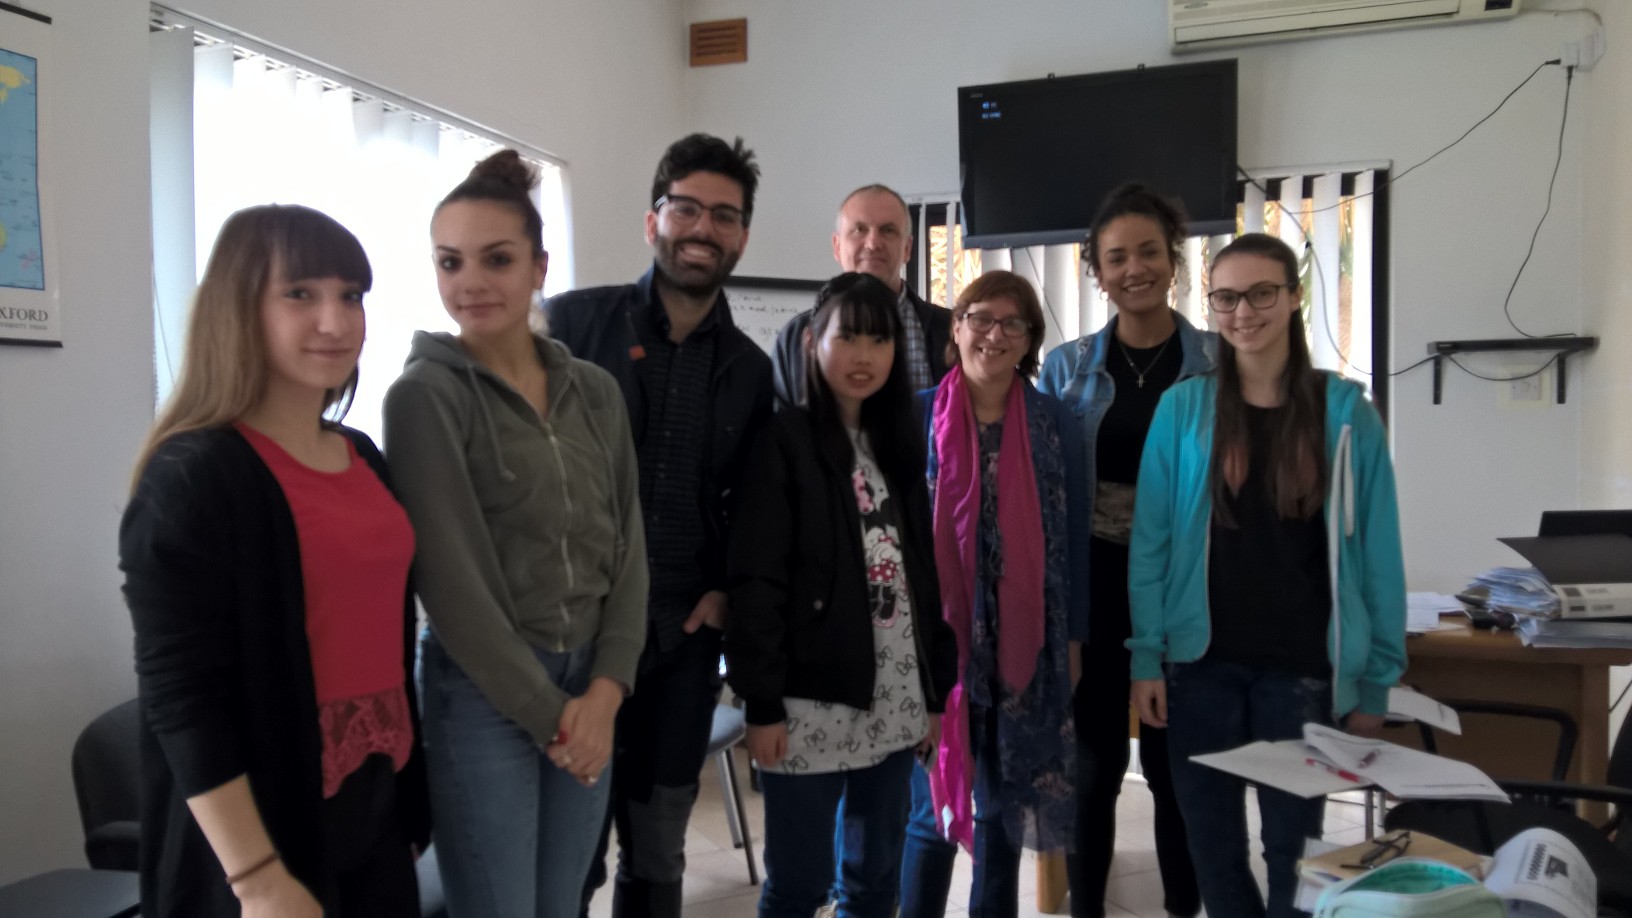 anglické kurzy pro dospělé studenty na Maltě skvělý cíl studovat angličtinu a relaxovat